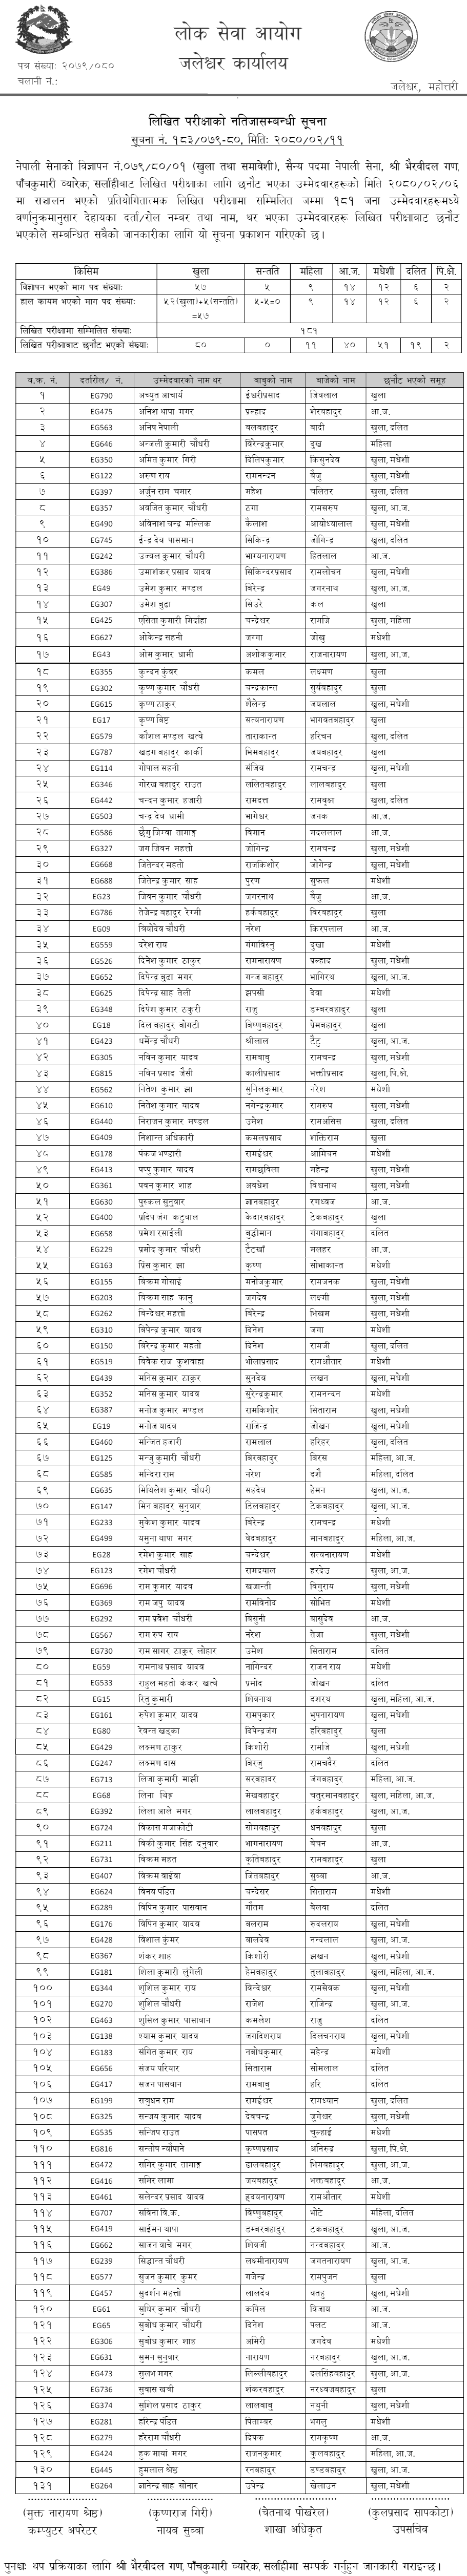 Nepal Army Sainya Post Written Exam Result 2080  Sarlahi,(Nawalparasi